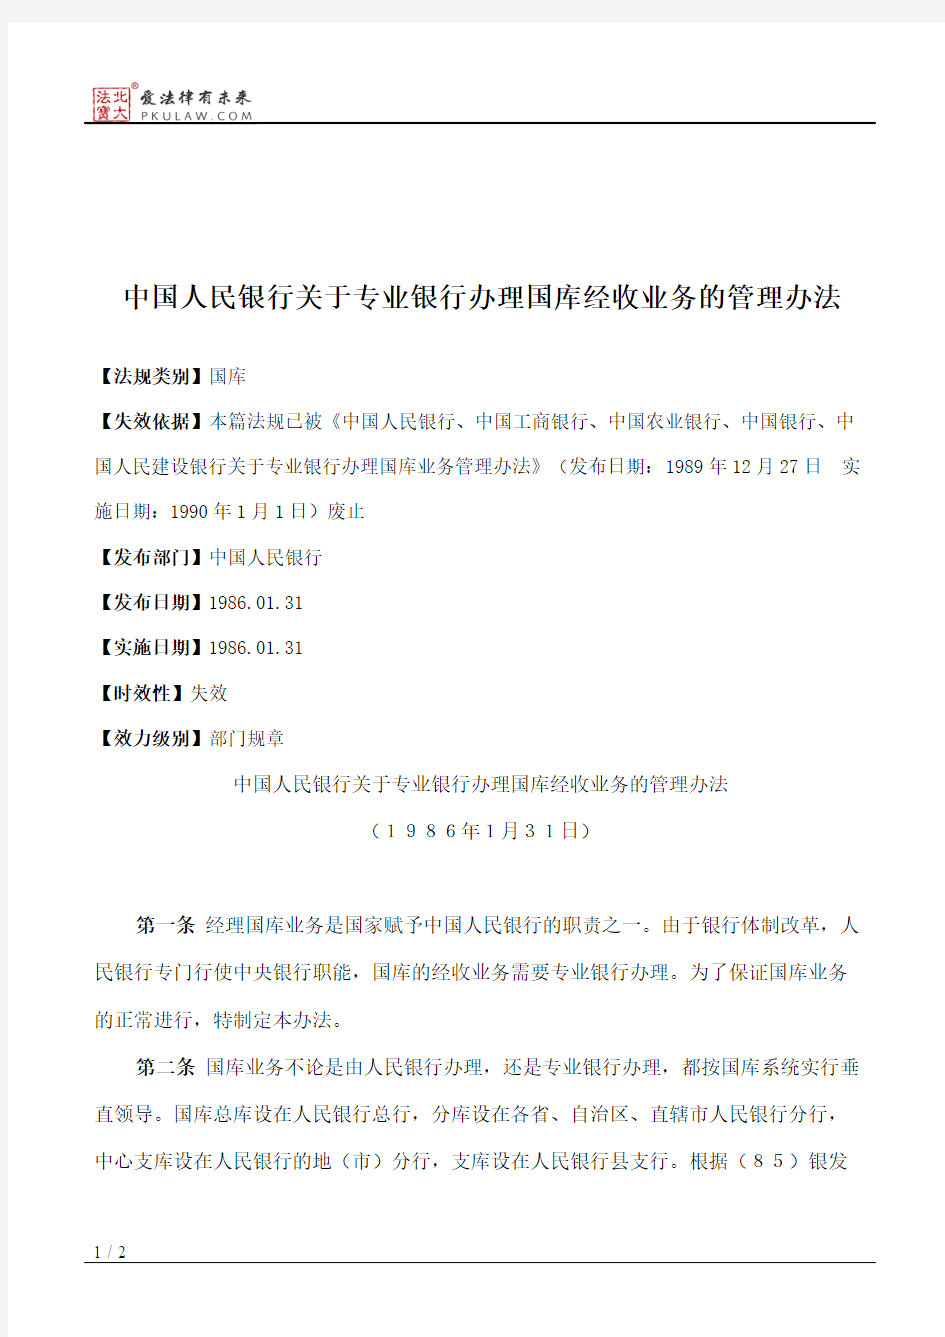 中国人民银行关于专业银行办理国库经收业务的管理办法